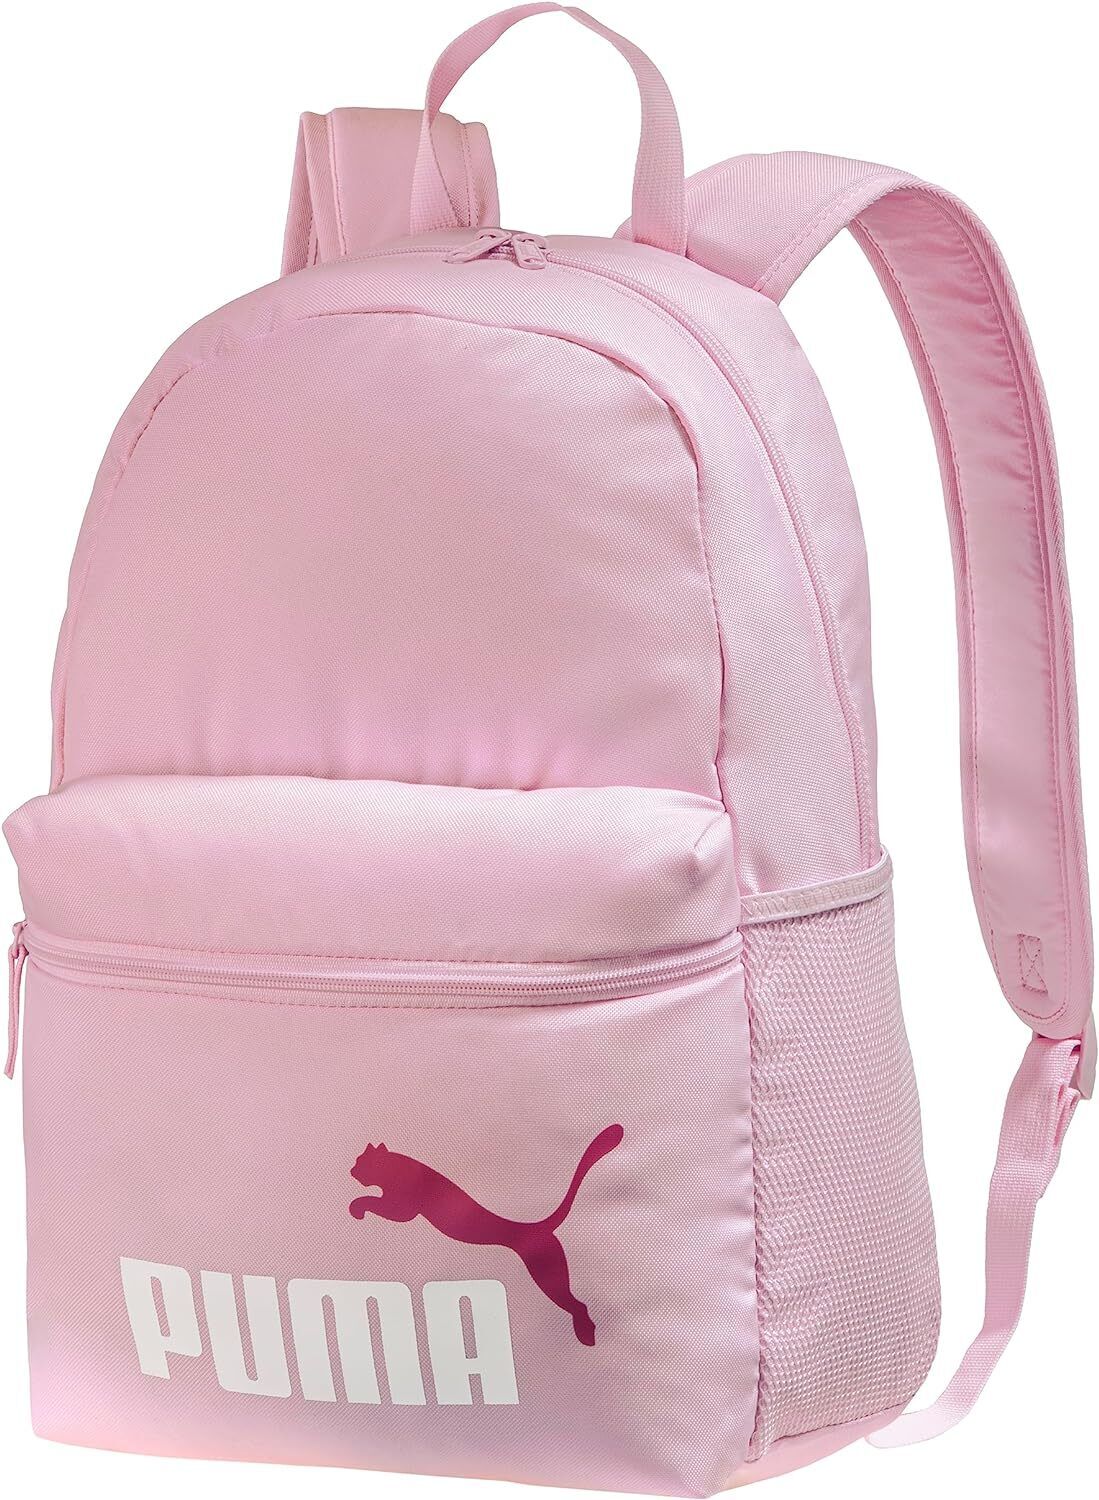 PUMA Phase Backpack Rucksack Sport Freizeit Reise Schule Daybag Statement Editio